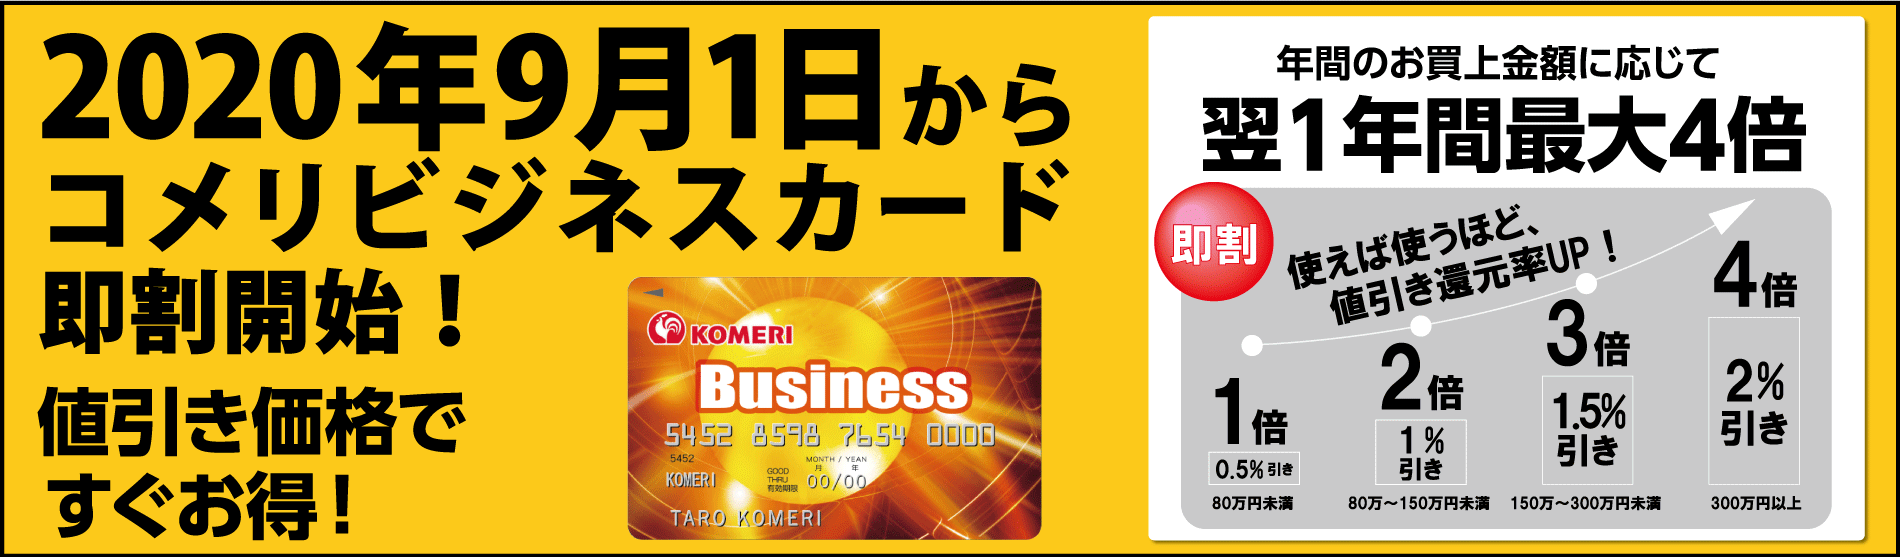 コメリカード Komeri Card